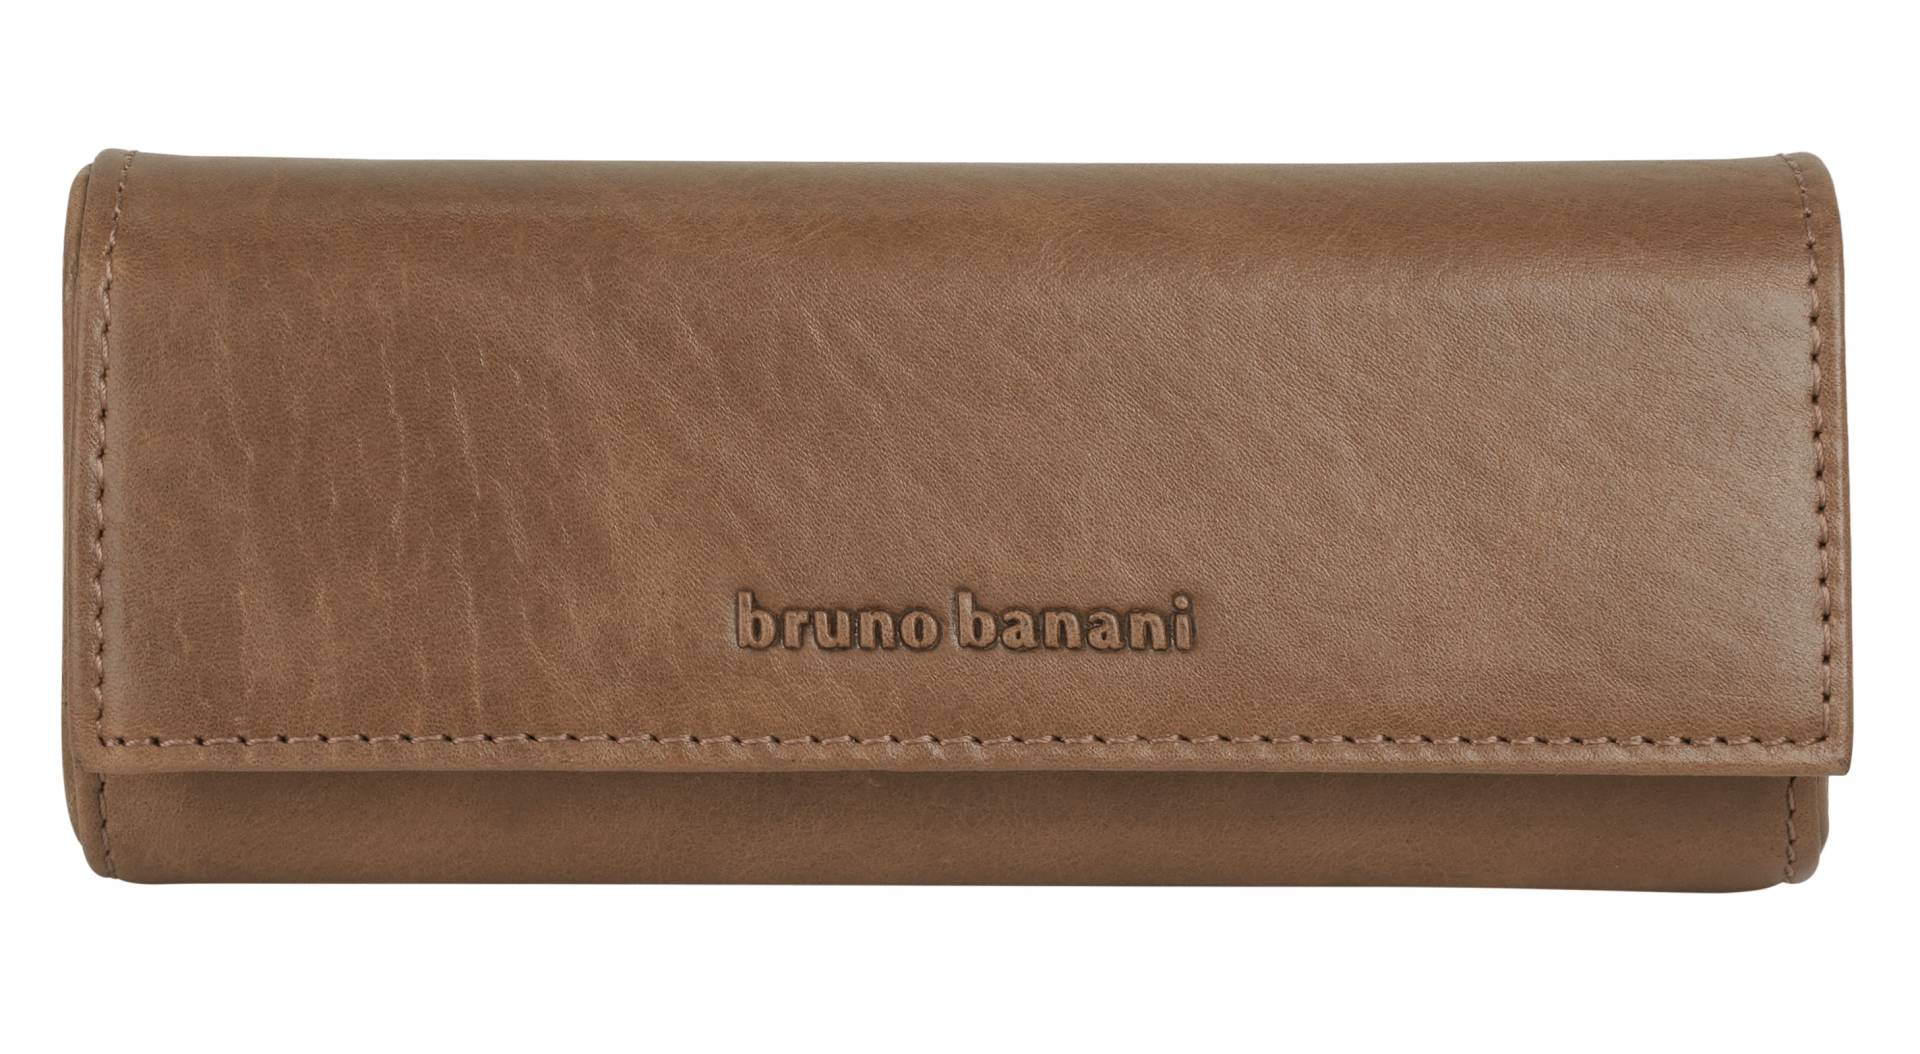 Bruno Banani Brustbeutel, echt Leder von Bruno Banani